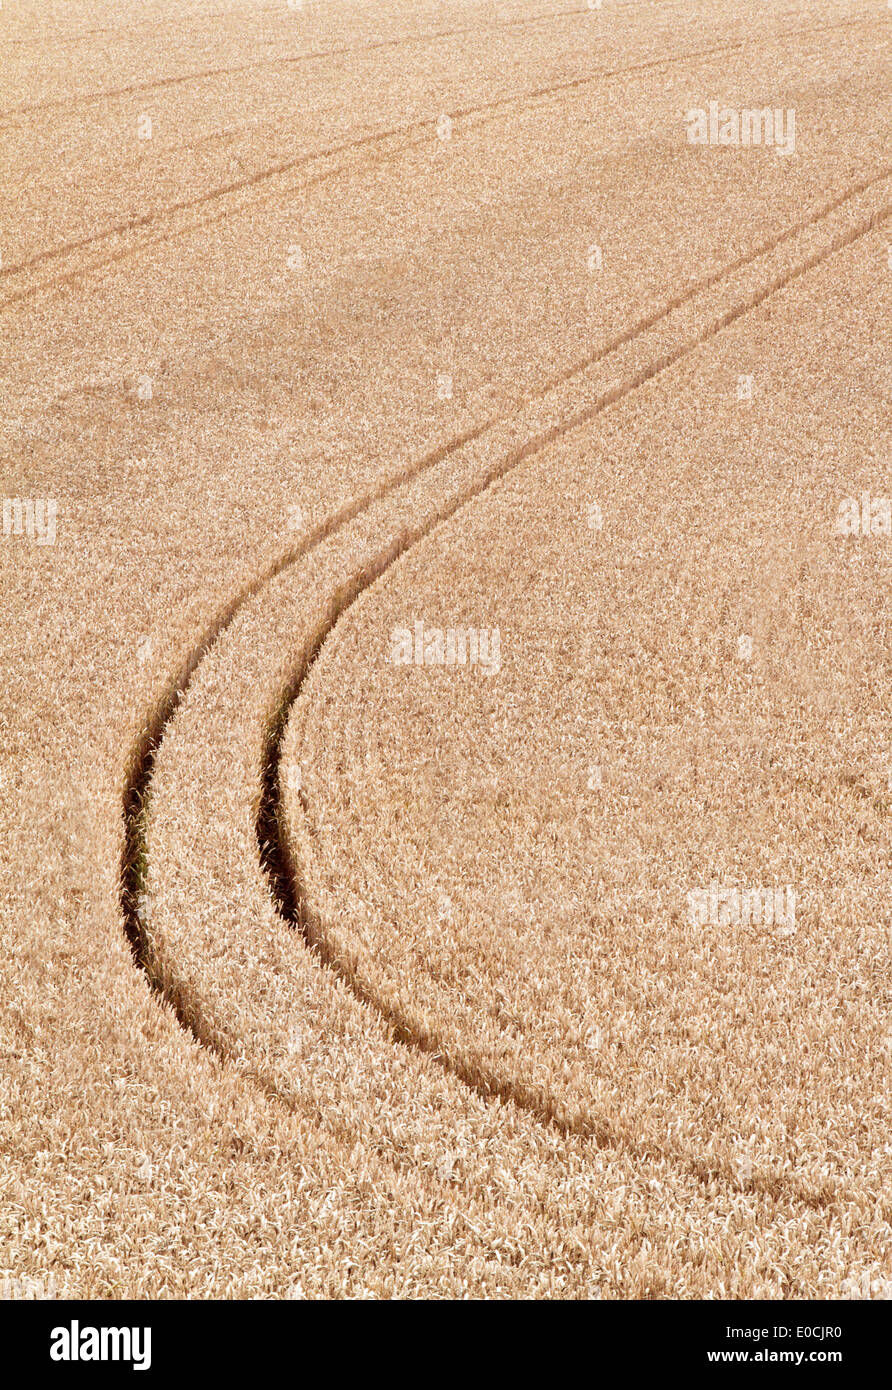 Les voies d'un tracteur dans un champ de céréales, Spuren von einem Traktor einem Getreide Feld Banque D'Images